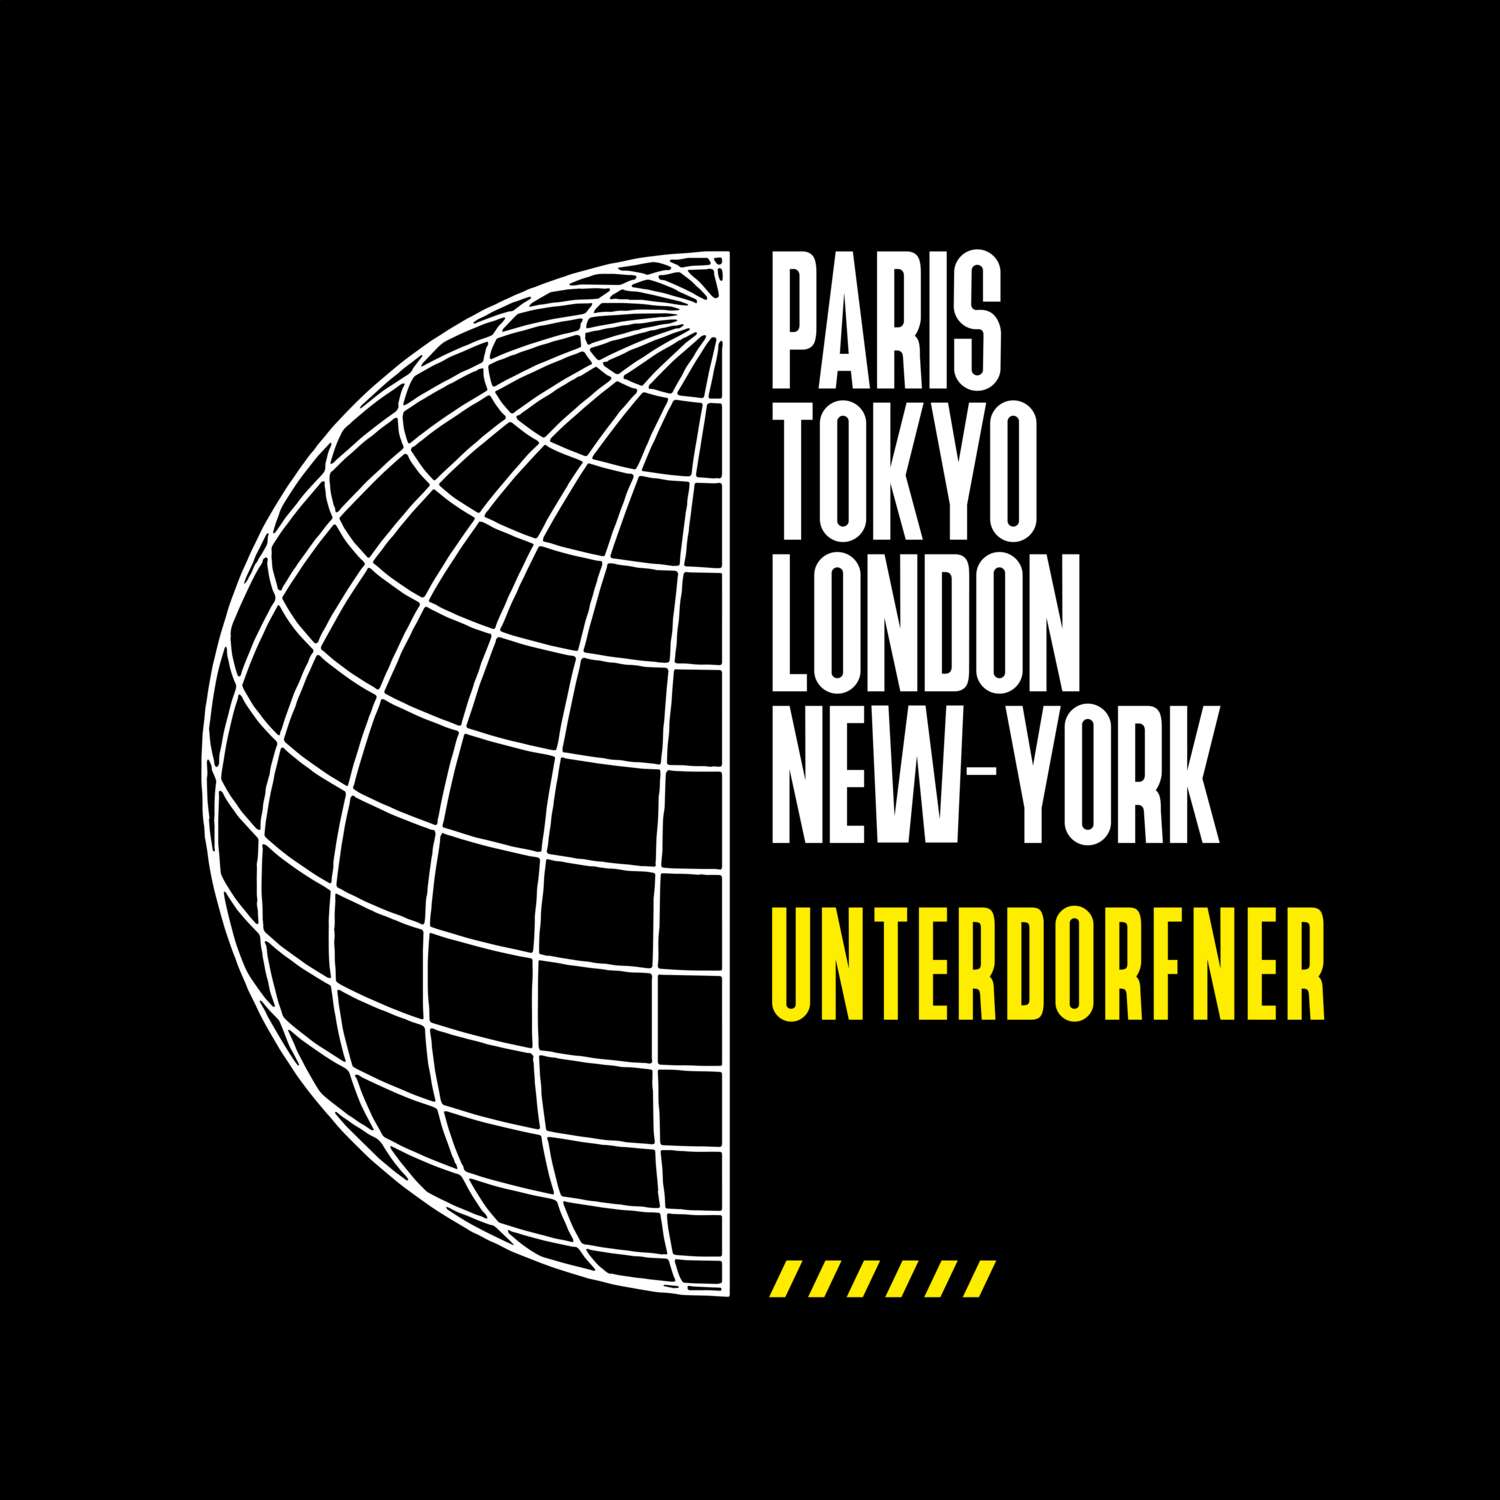 Unterdorfner T-Shirt »Paris Tokyo London«